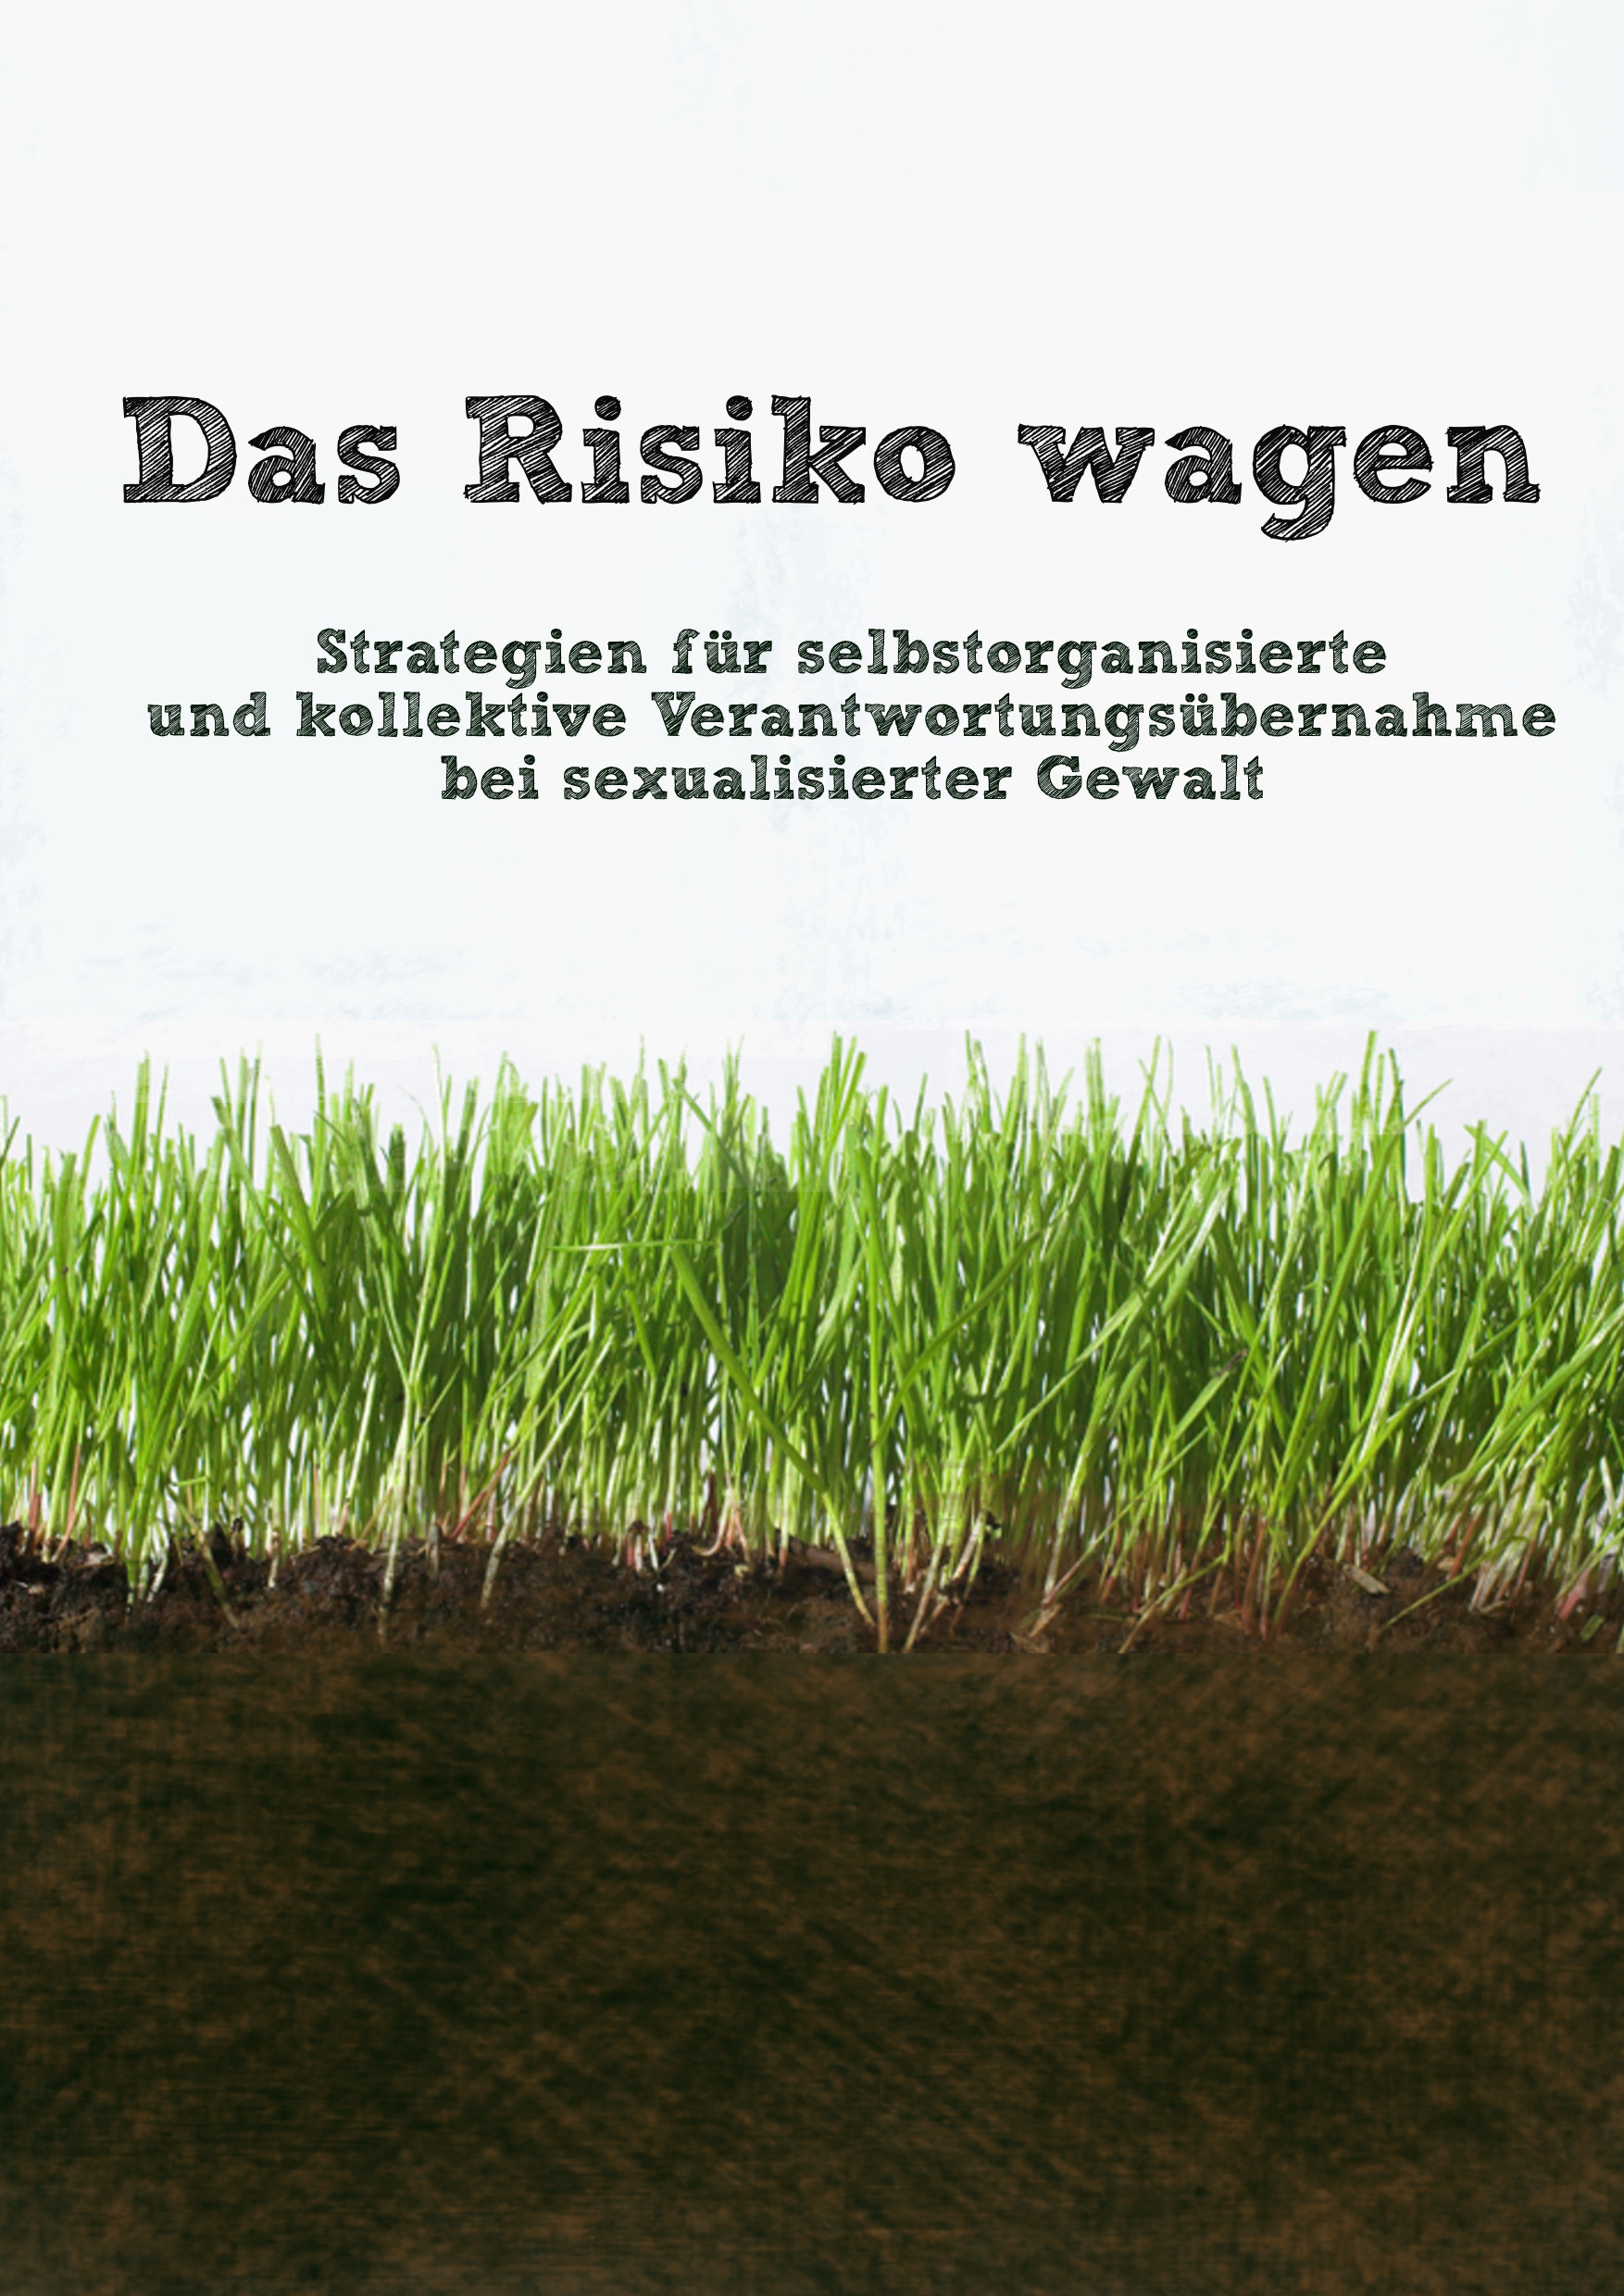 Bild von Gras und Erde. Oben steht "Das Risiko wagen. Strategien für selbstorganisierte und kollektive Verantwortungsübernahme bei sexualisierter Gewalt"